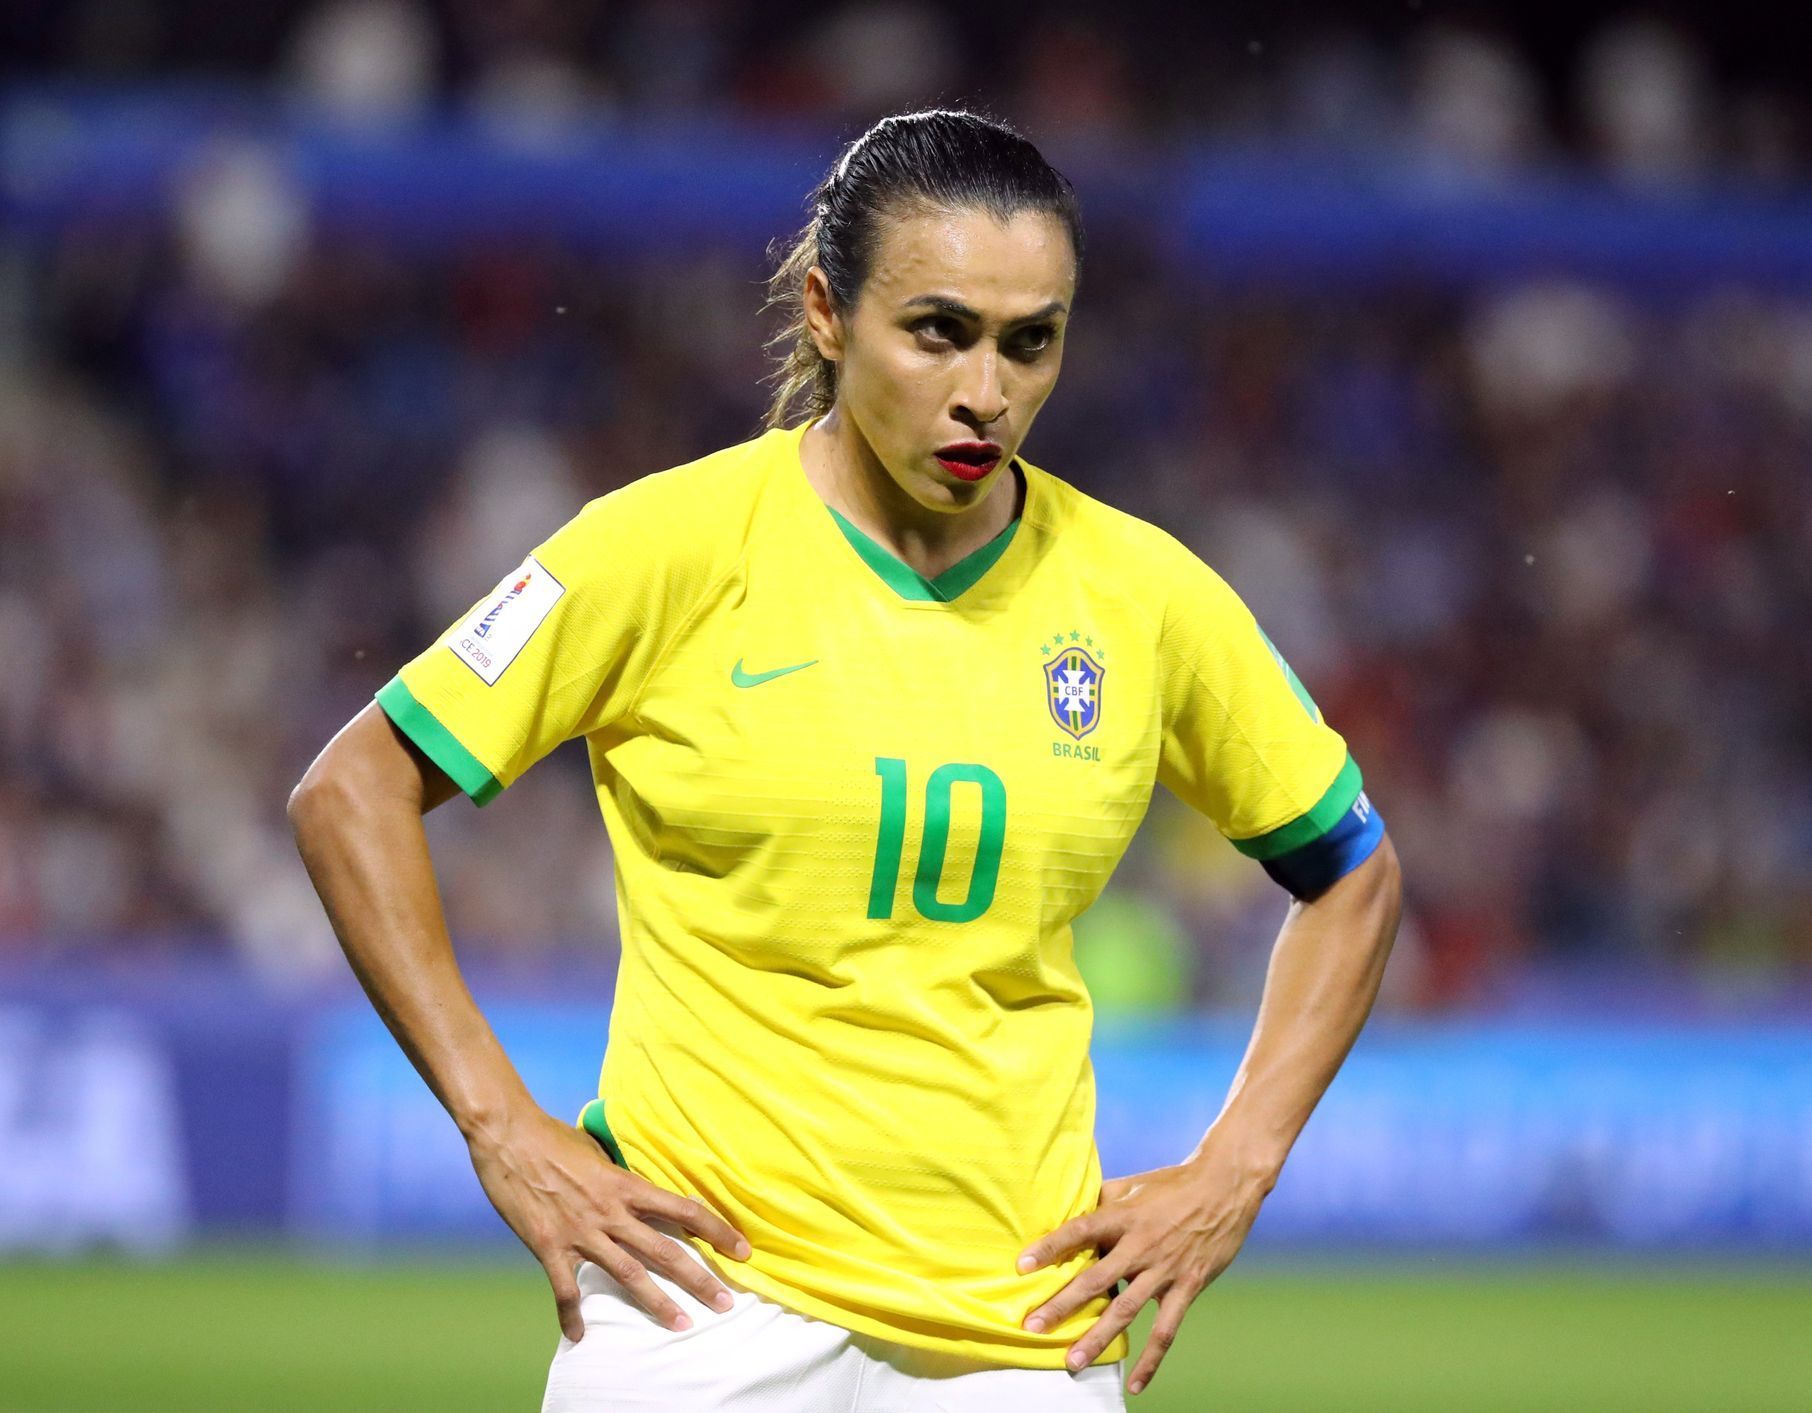 fotbal, MS žen 2019, Francie - Brazílie, Marta